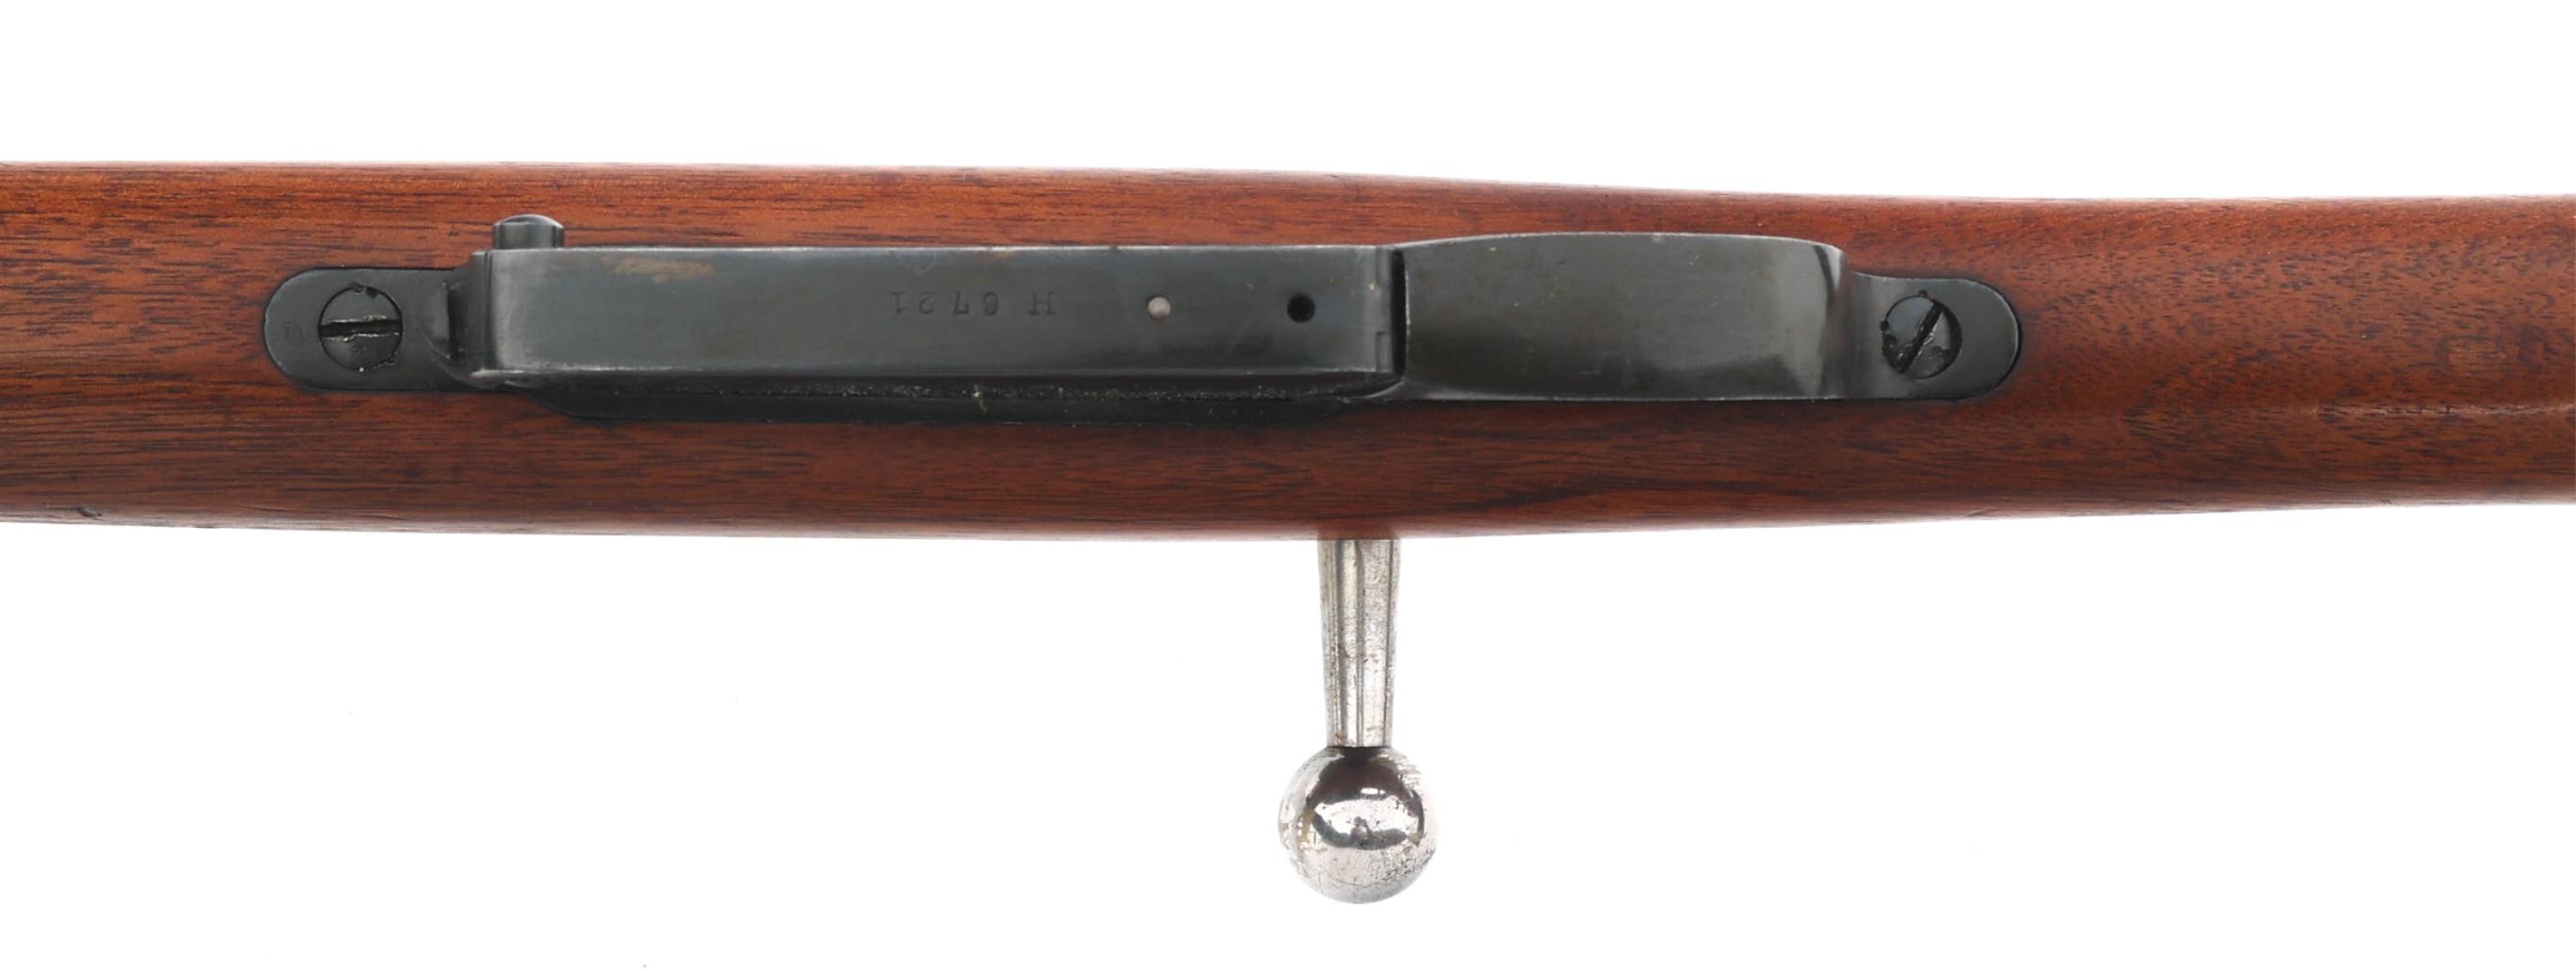 SPORTERIZED ARGENTINIAN LOEWE 1891 7.65mm RIFLE